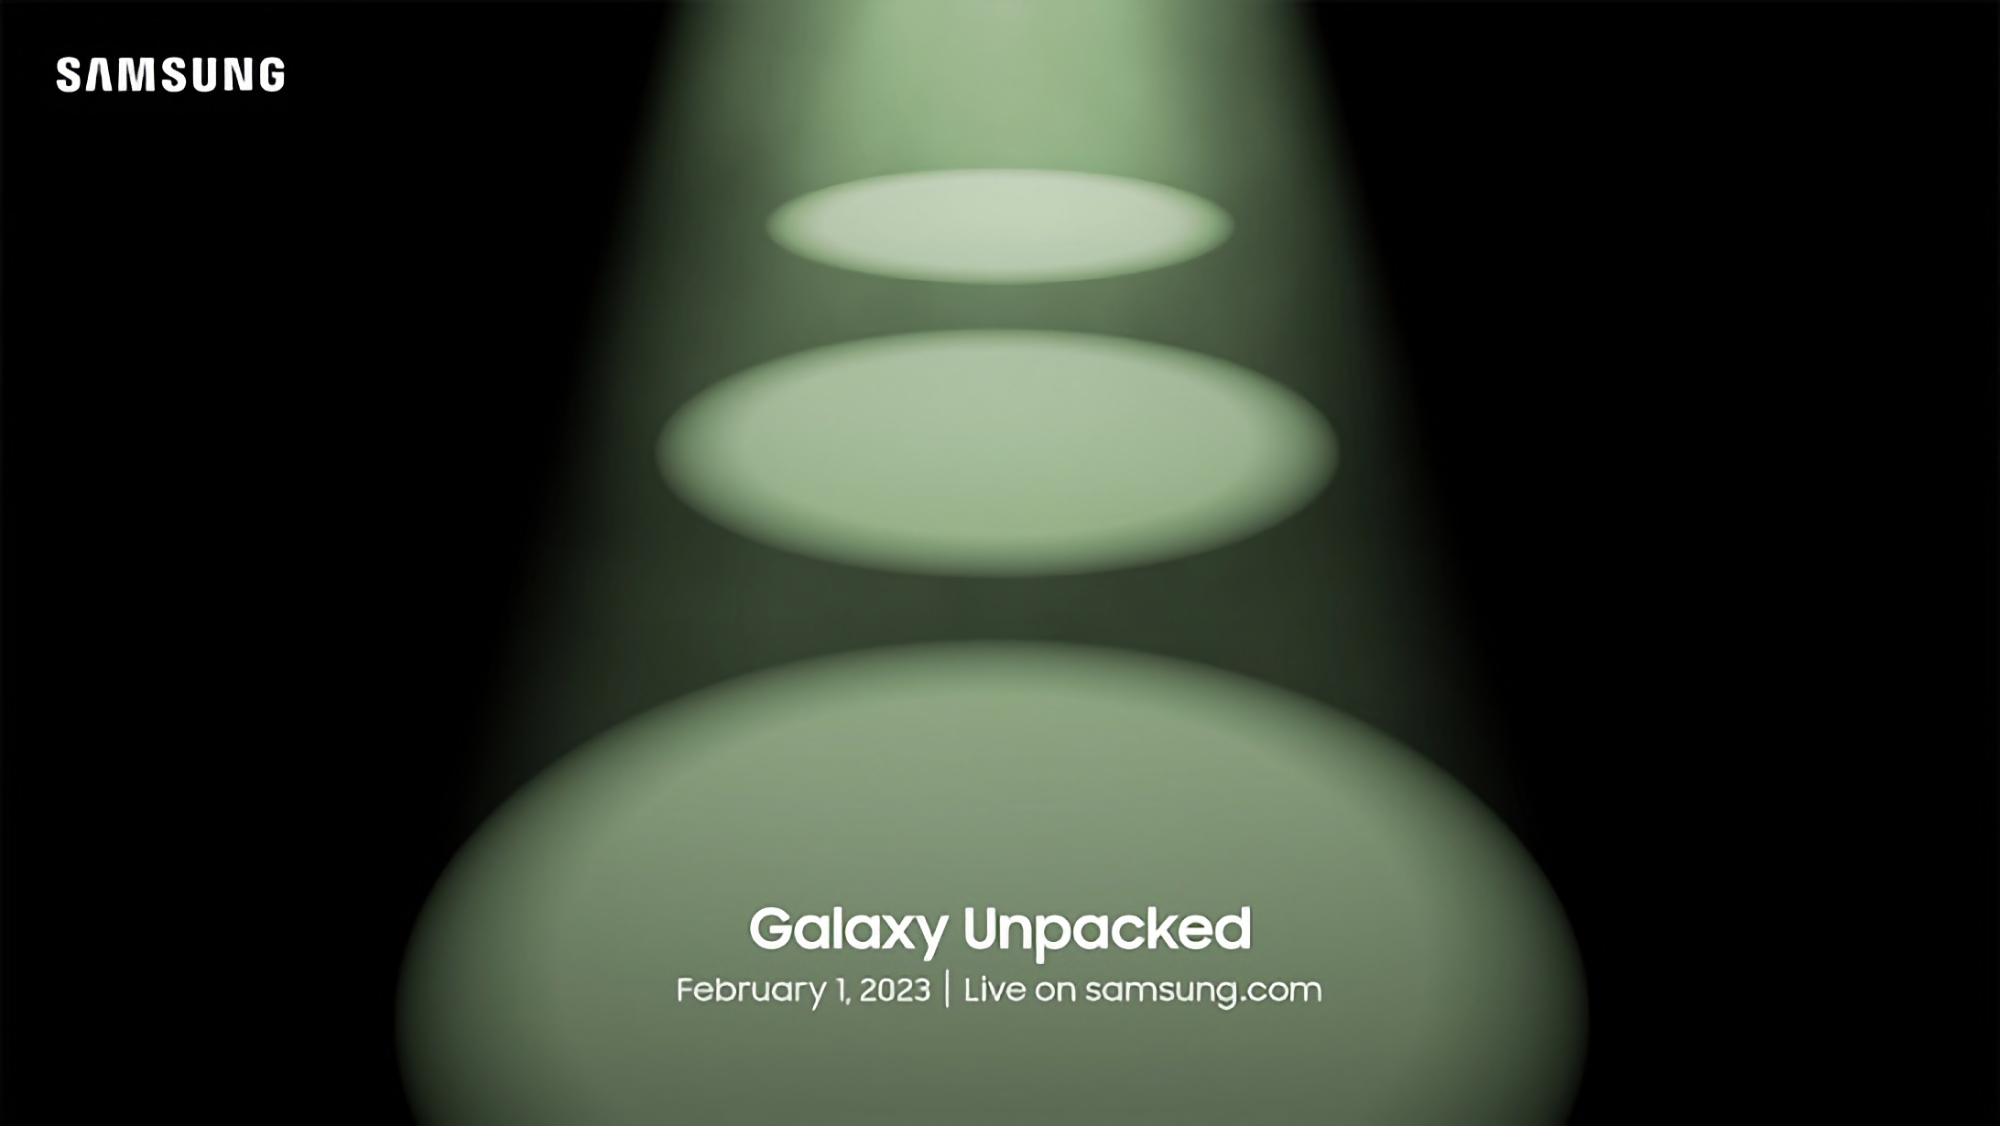 Ora è ufficiale: Samsung mostrerà i flagship Galaxy S23 alla presentazione Galaxy Unpacked il 1° febbraio.